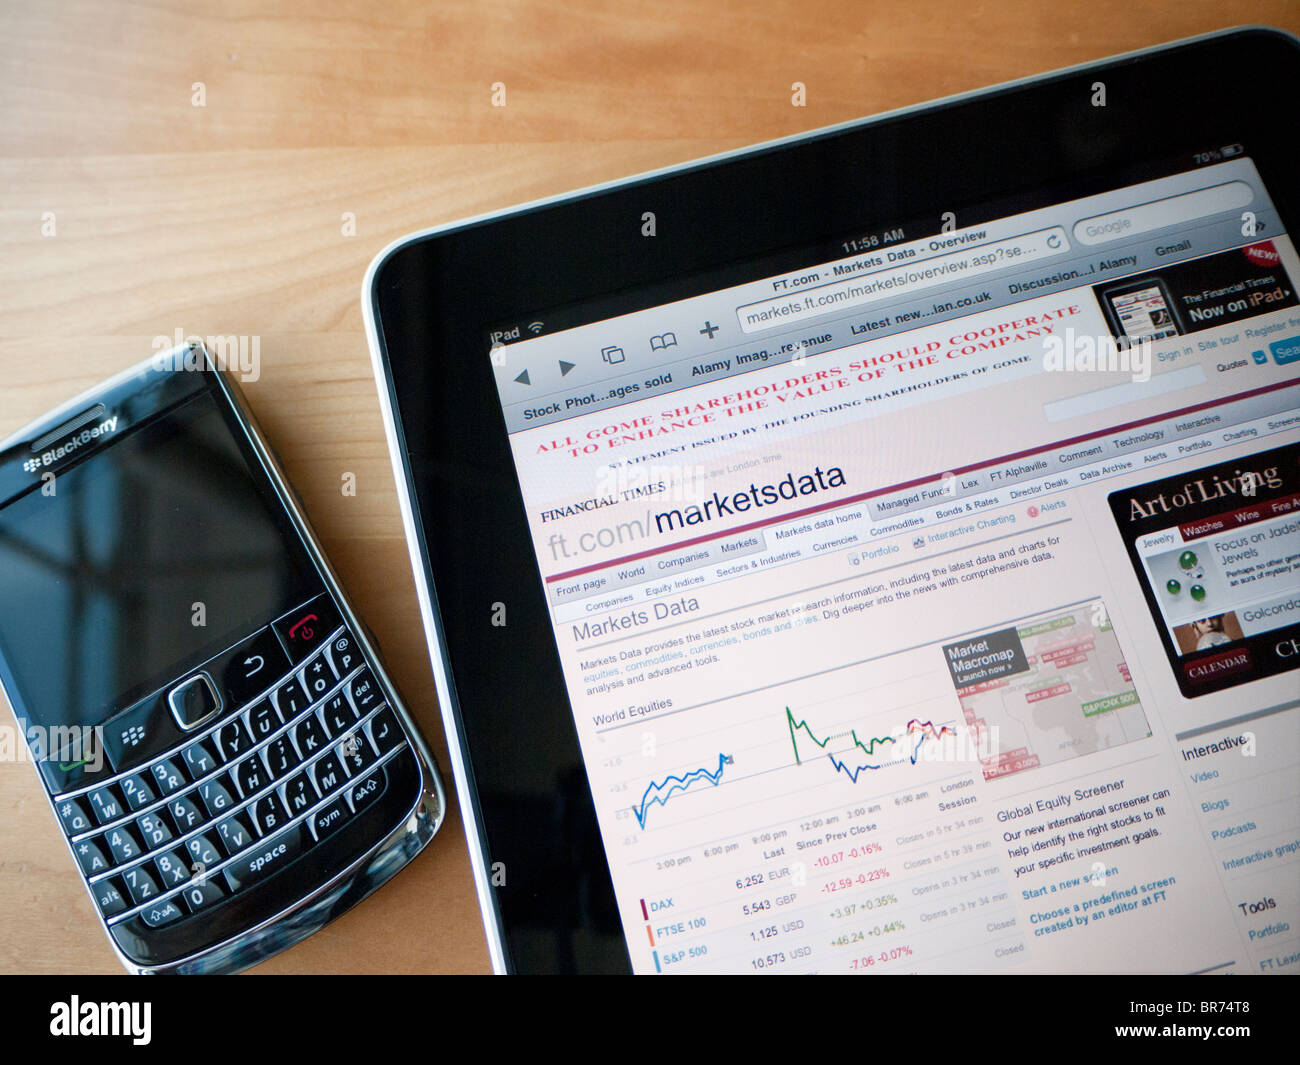 Dettaglio del computer tablet iPad mostra sito web del Financial Times la sezione mercati. Foto Stock